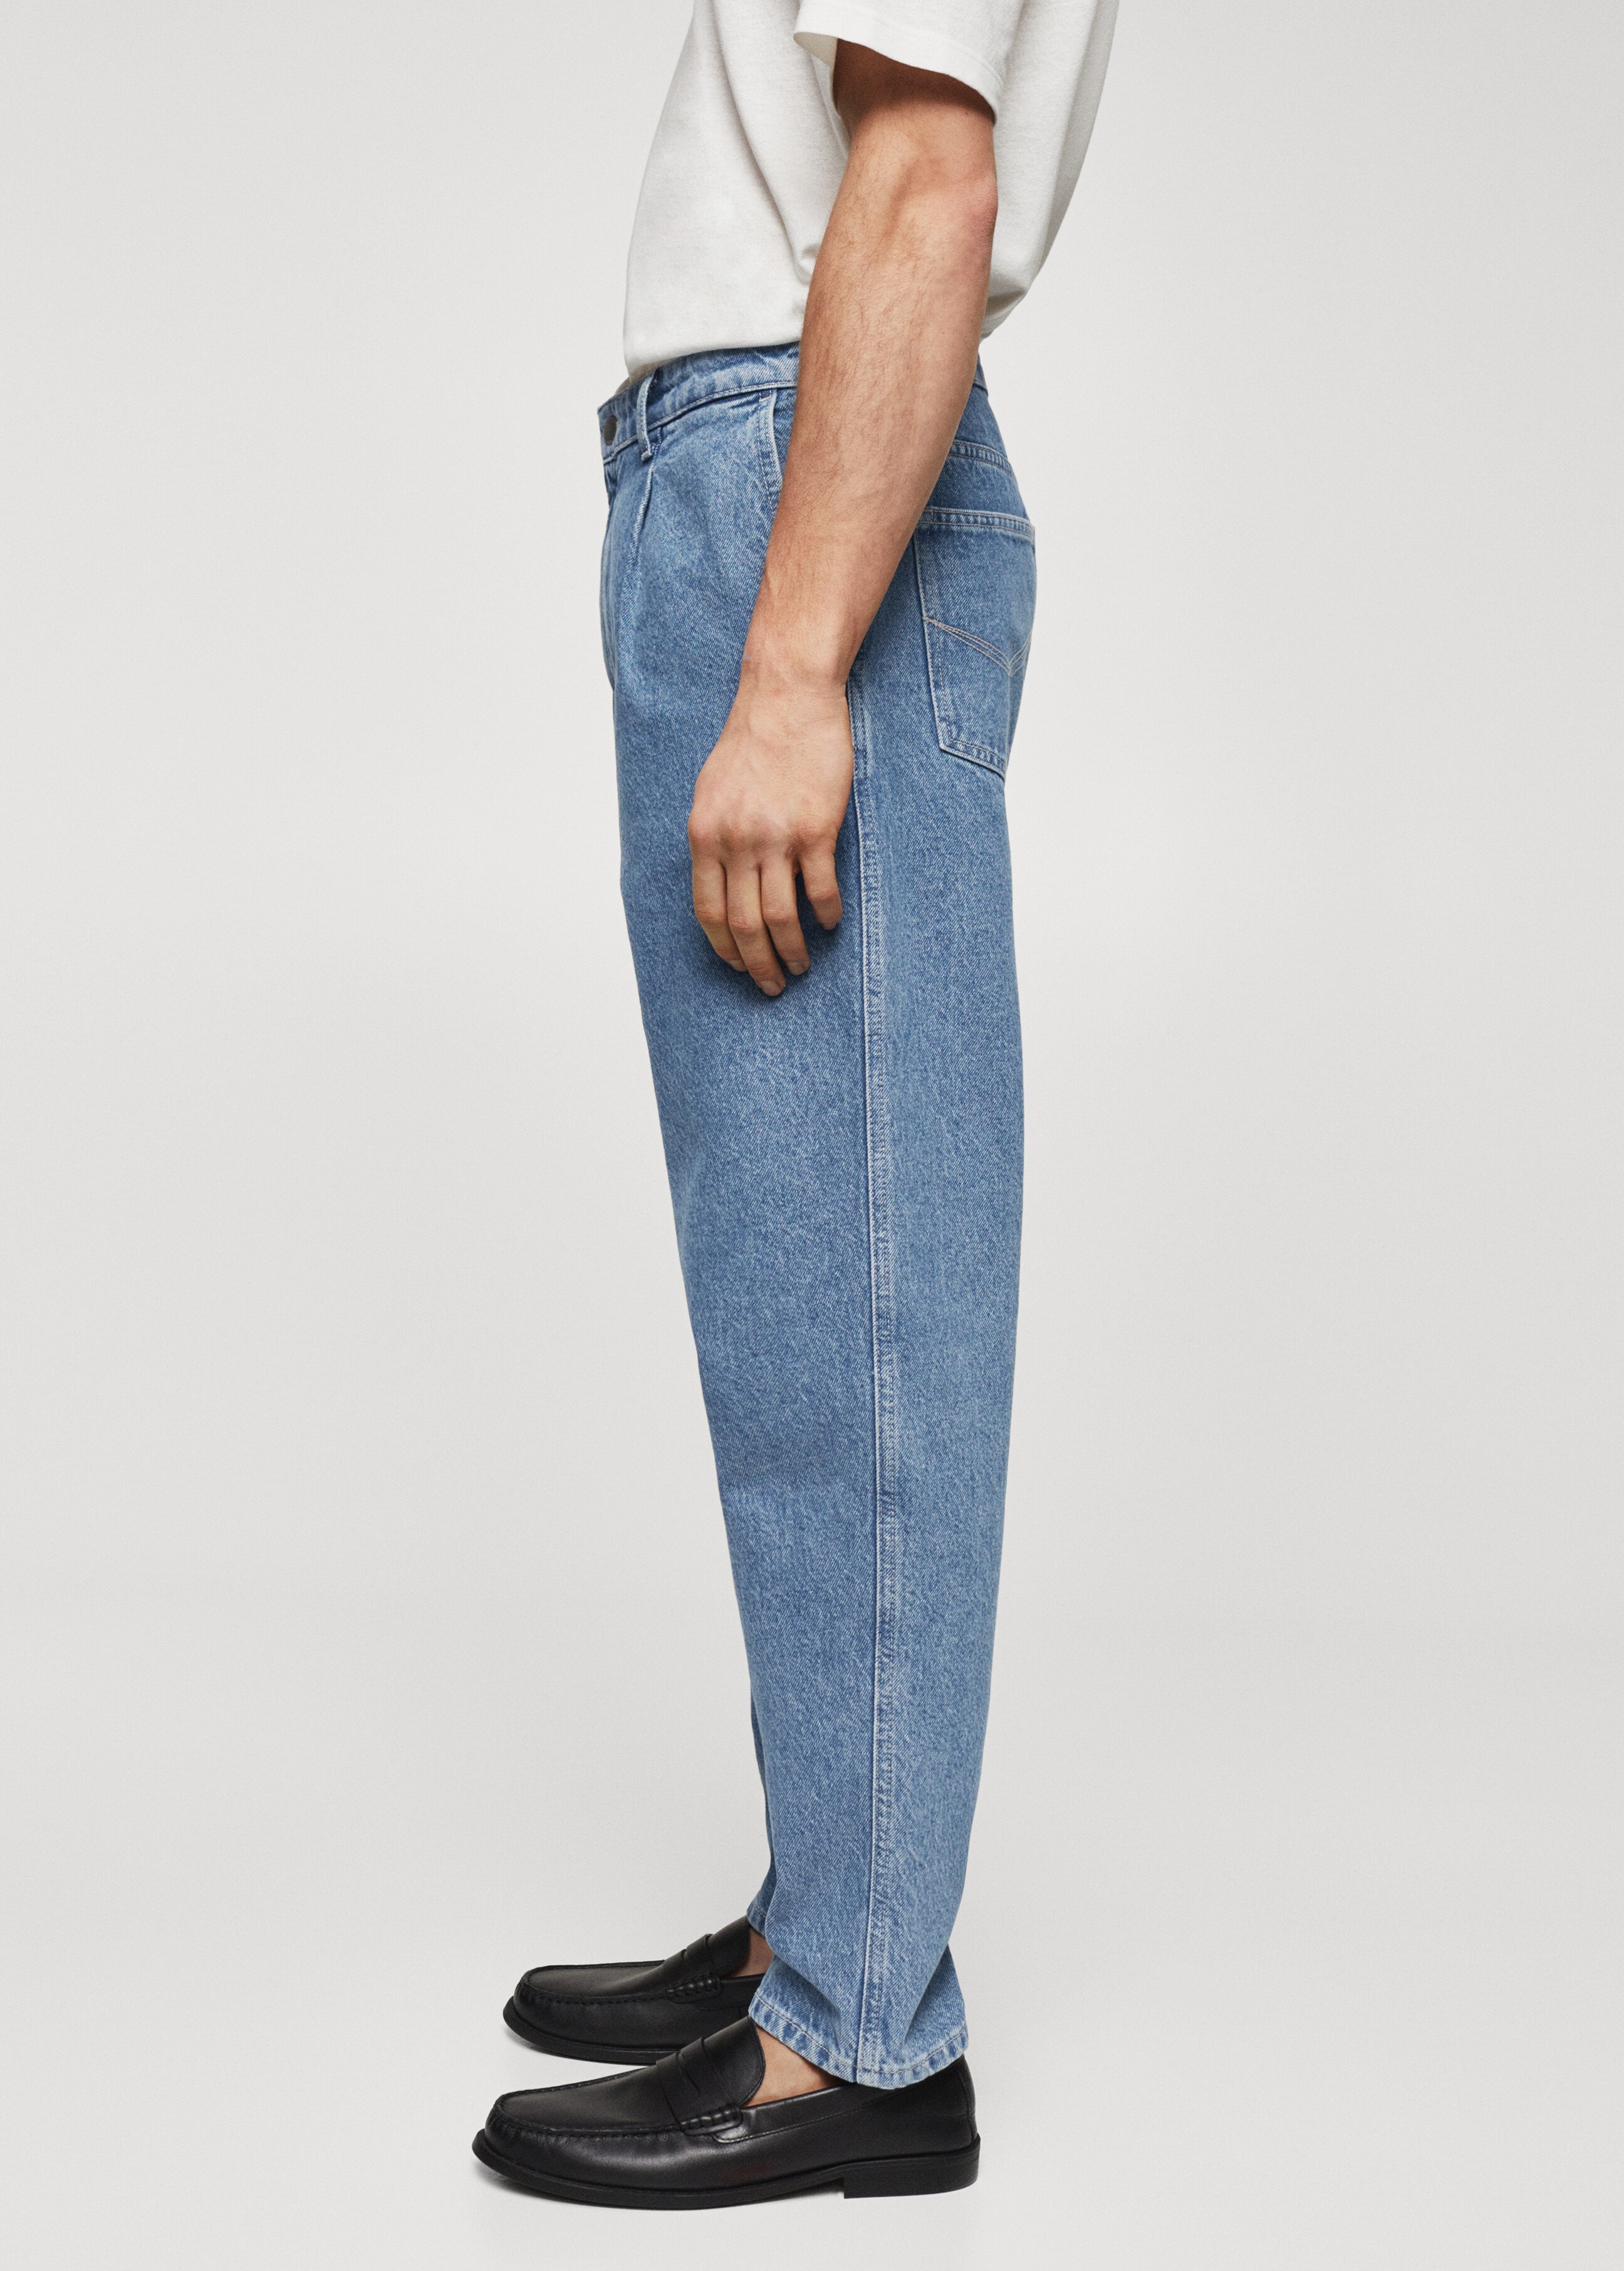 Jeans slouchy pinces - Dettaglio dell'articolo 4